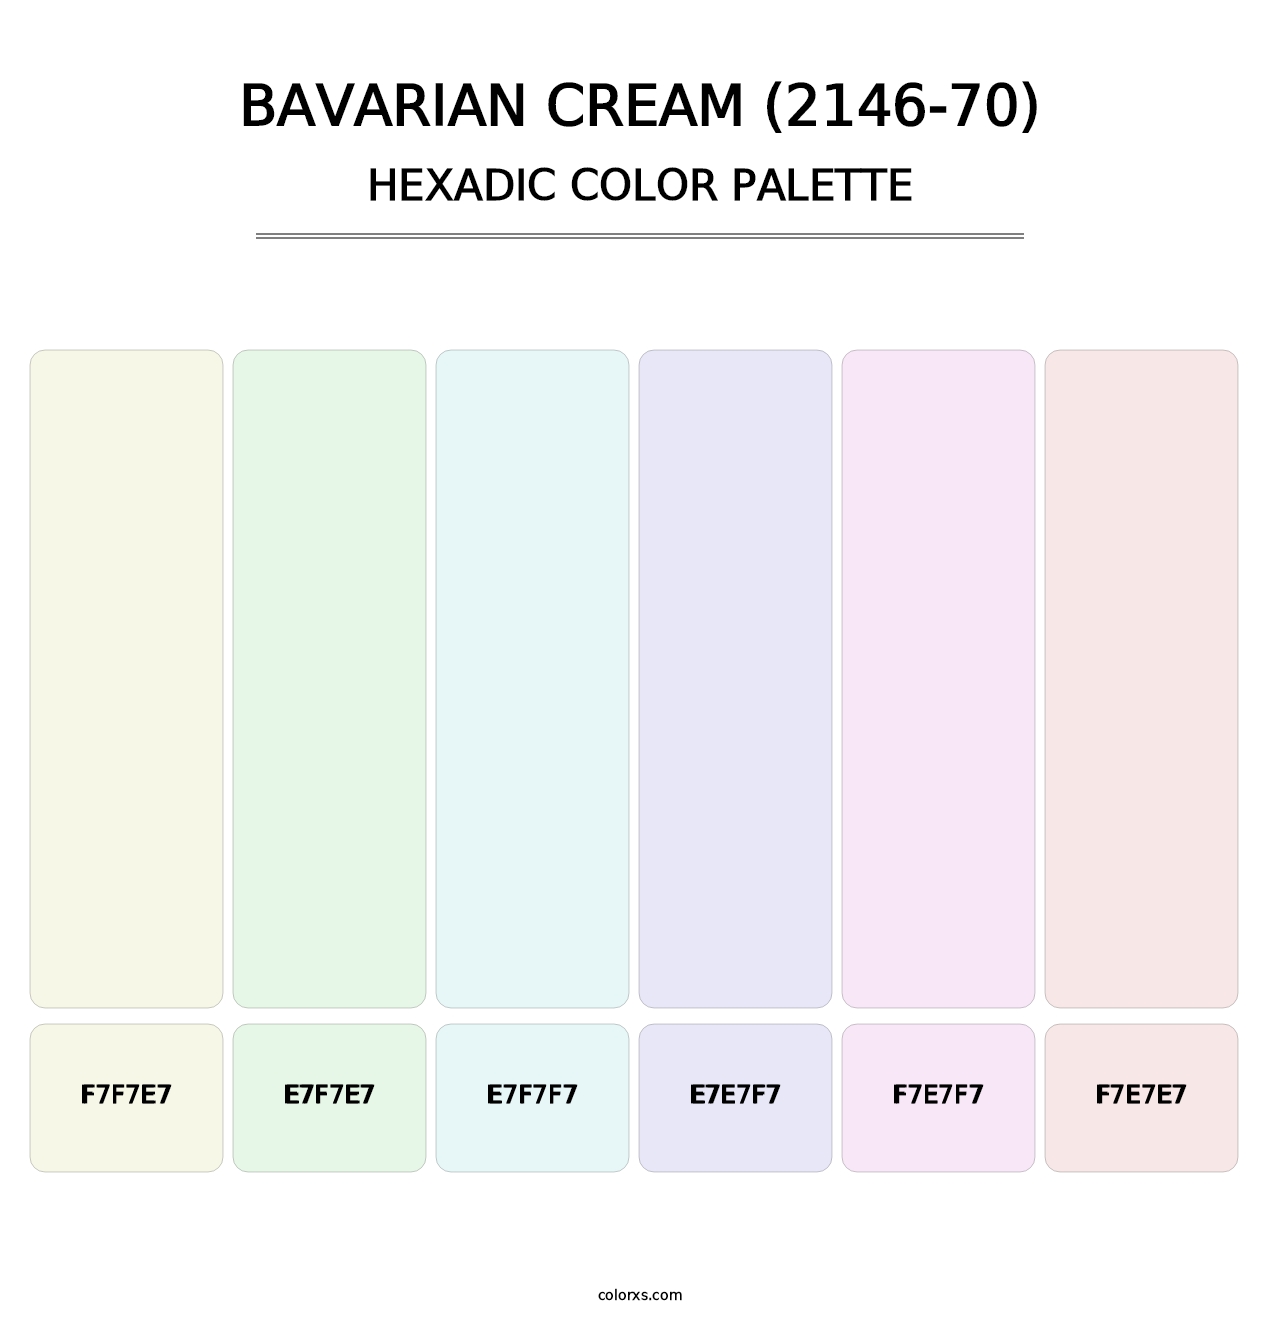 Bavarian Cream (2146-70) - Hexadic Color Palette